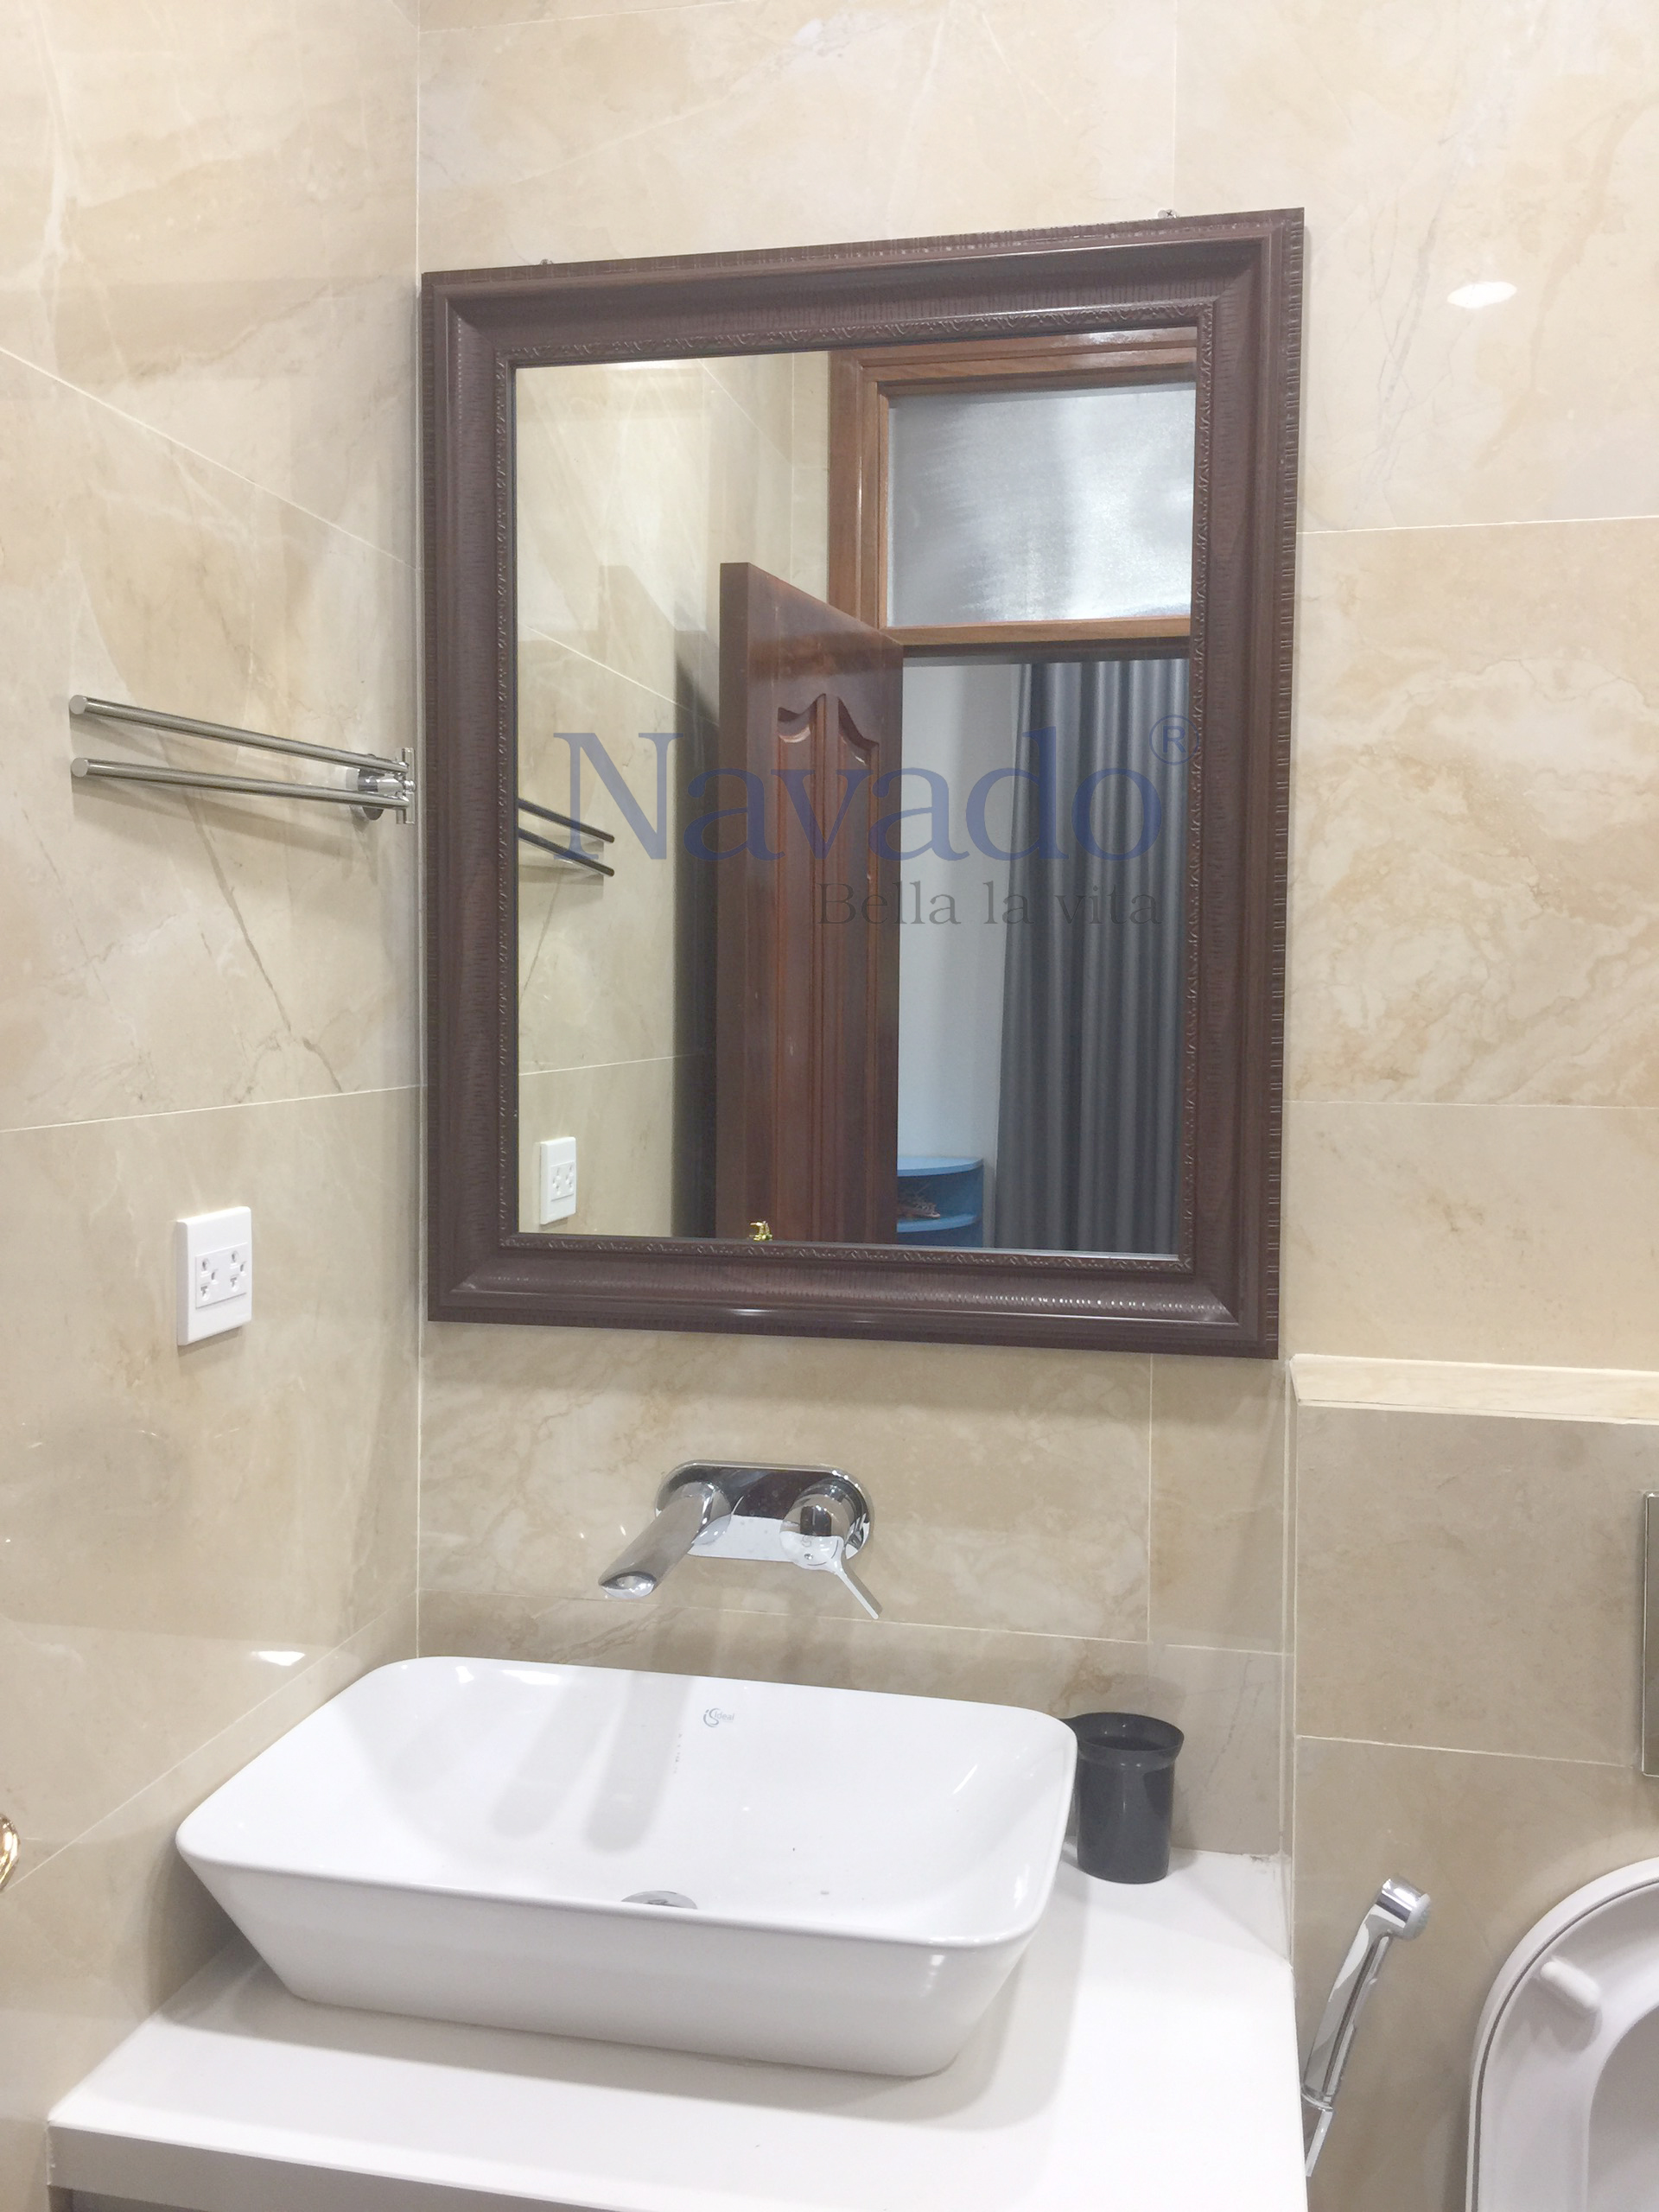 Gương phòng tắm cao cấp gia công khung gỗ Bỉ là một sản phẩm độc đáo và đầy tình cảm. Được chế tác từ chất liệu gỗ bền, sản phẩm này có bề mặt gia công bằng kỹ thuật tiên tiến và chăm chút tỉ mỉ từng chi tiết. Với vẻ đẹp sang trọng và lịch lãm, sản phẩm này xứng đáng là một sản phẩm cao cấp trong không gian phòng tắm.